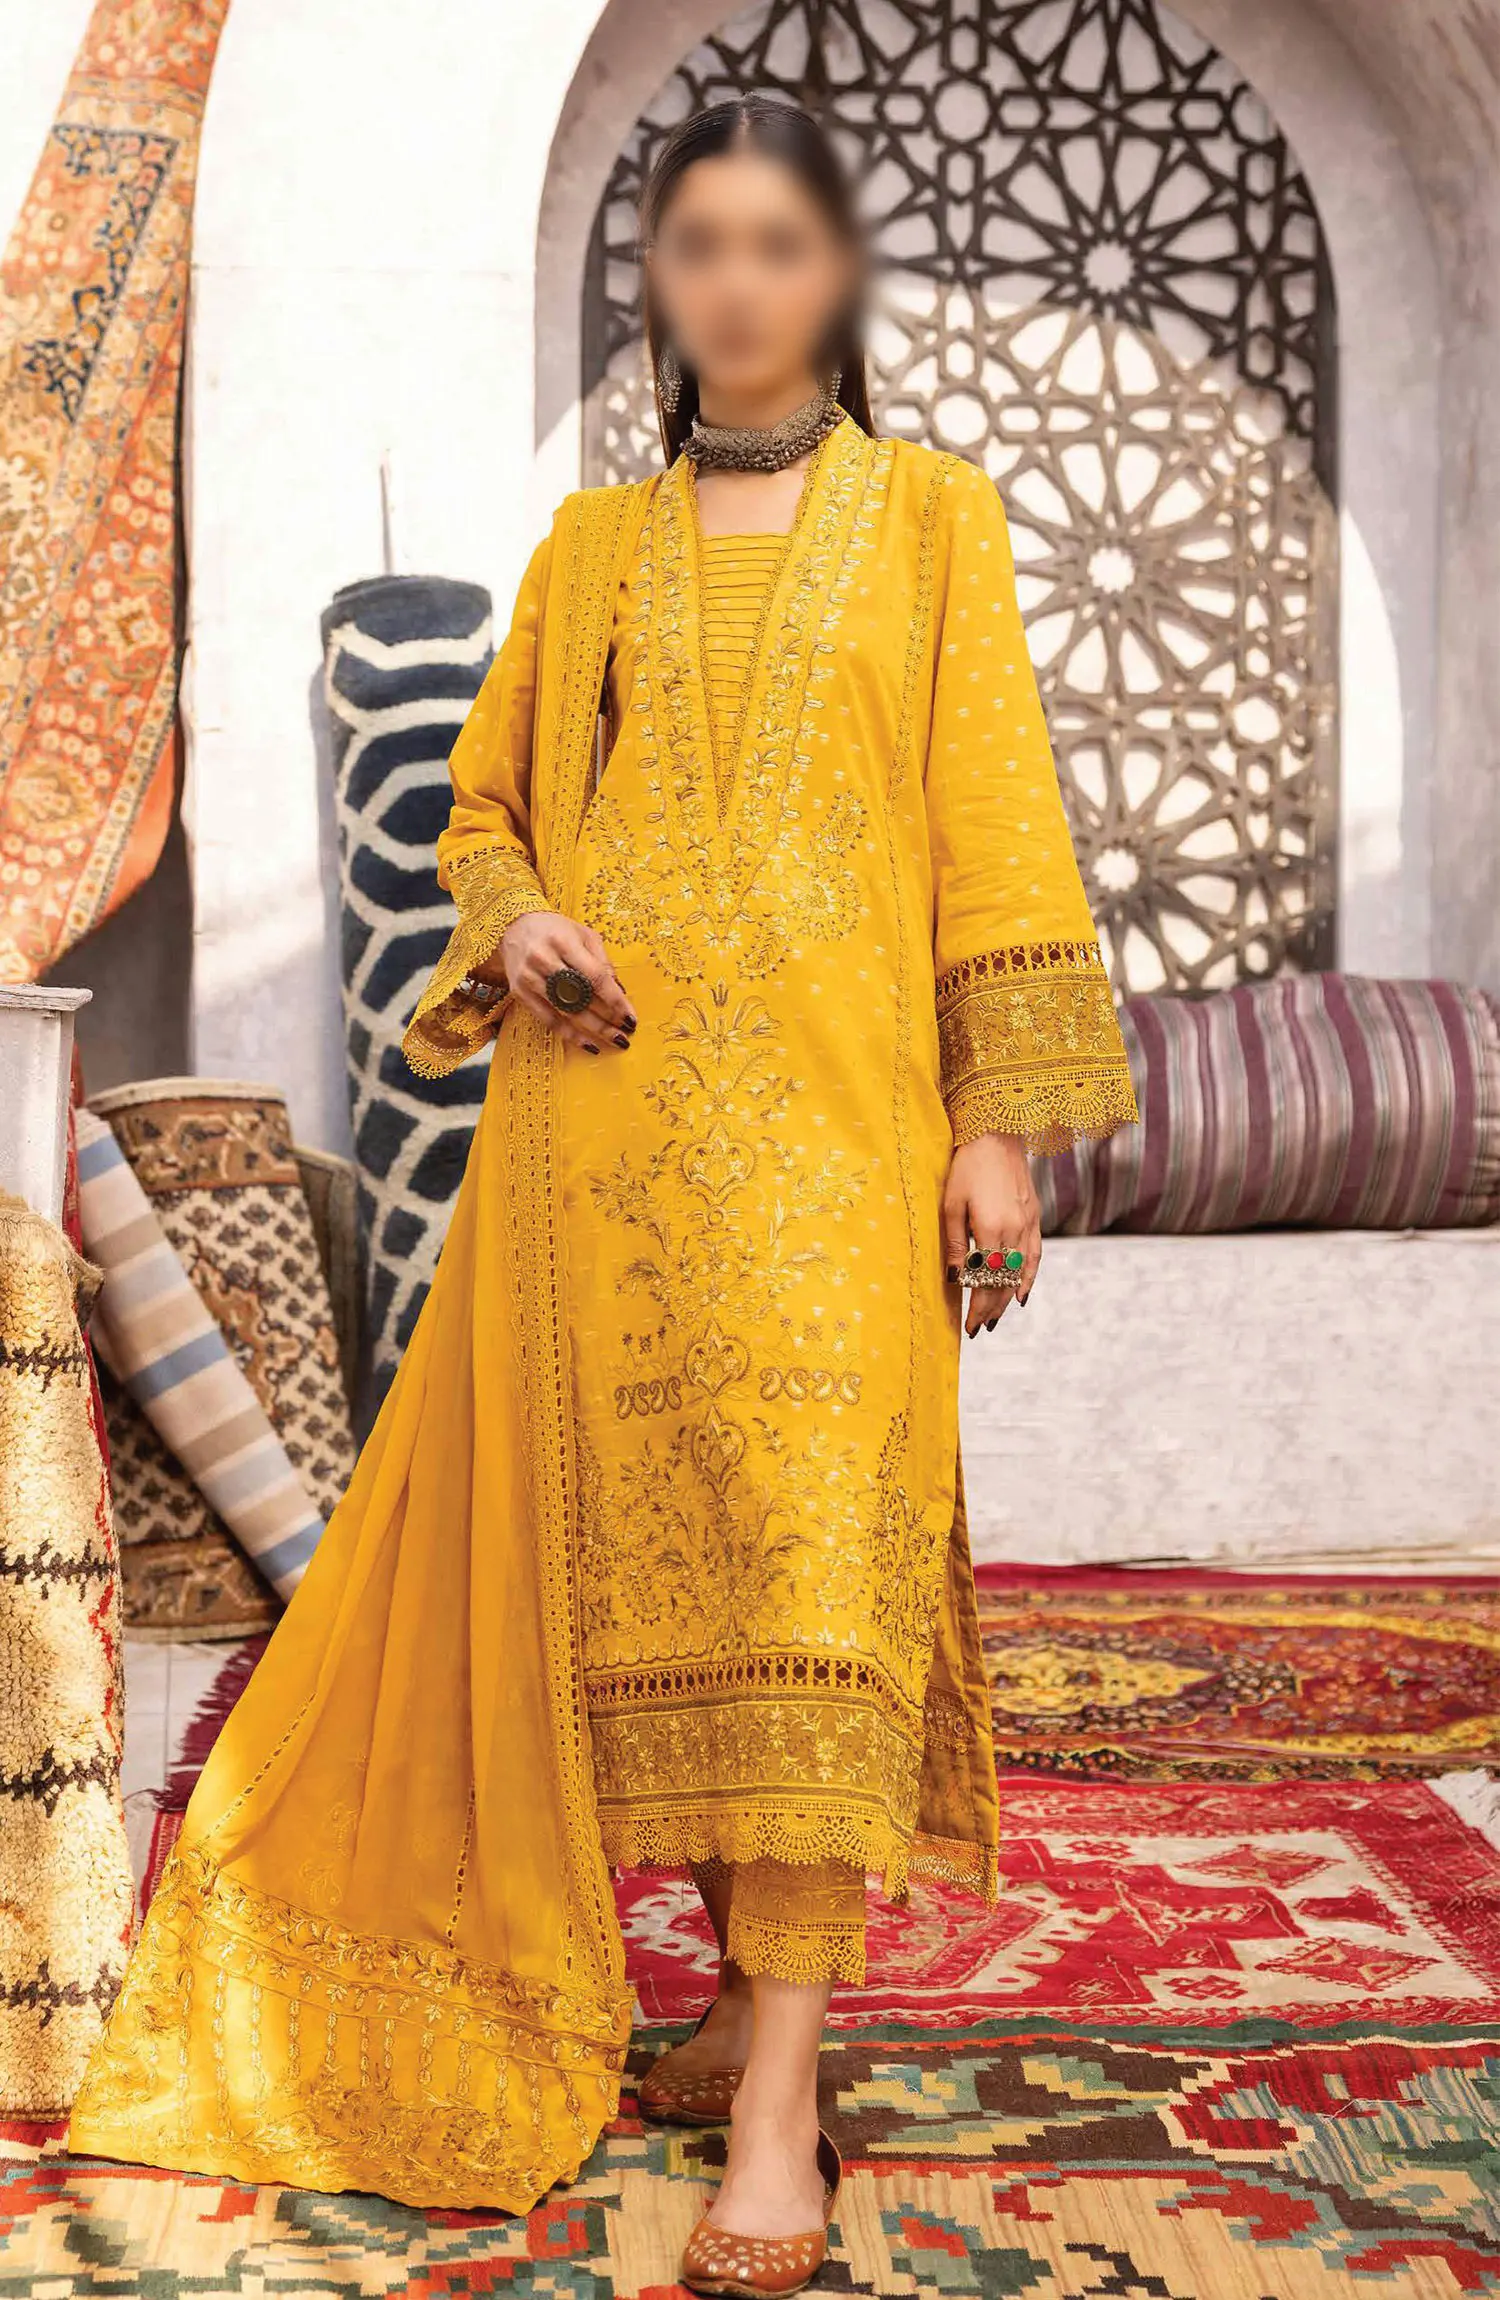 Johra Naqsh Embroidered Banarsi Jacquard Lawn Collection - JH 233